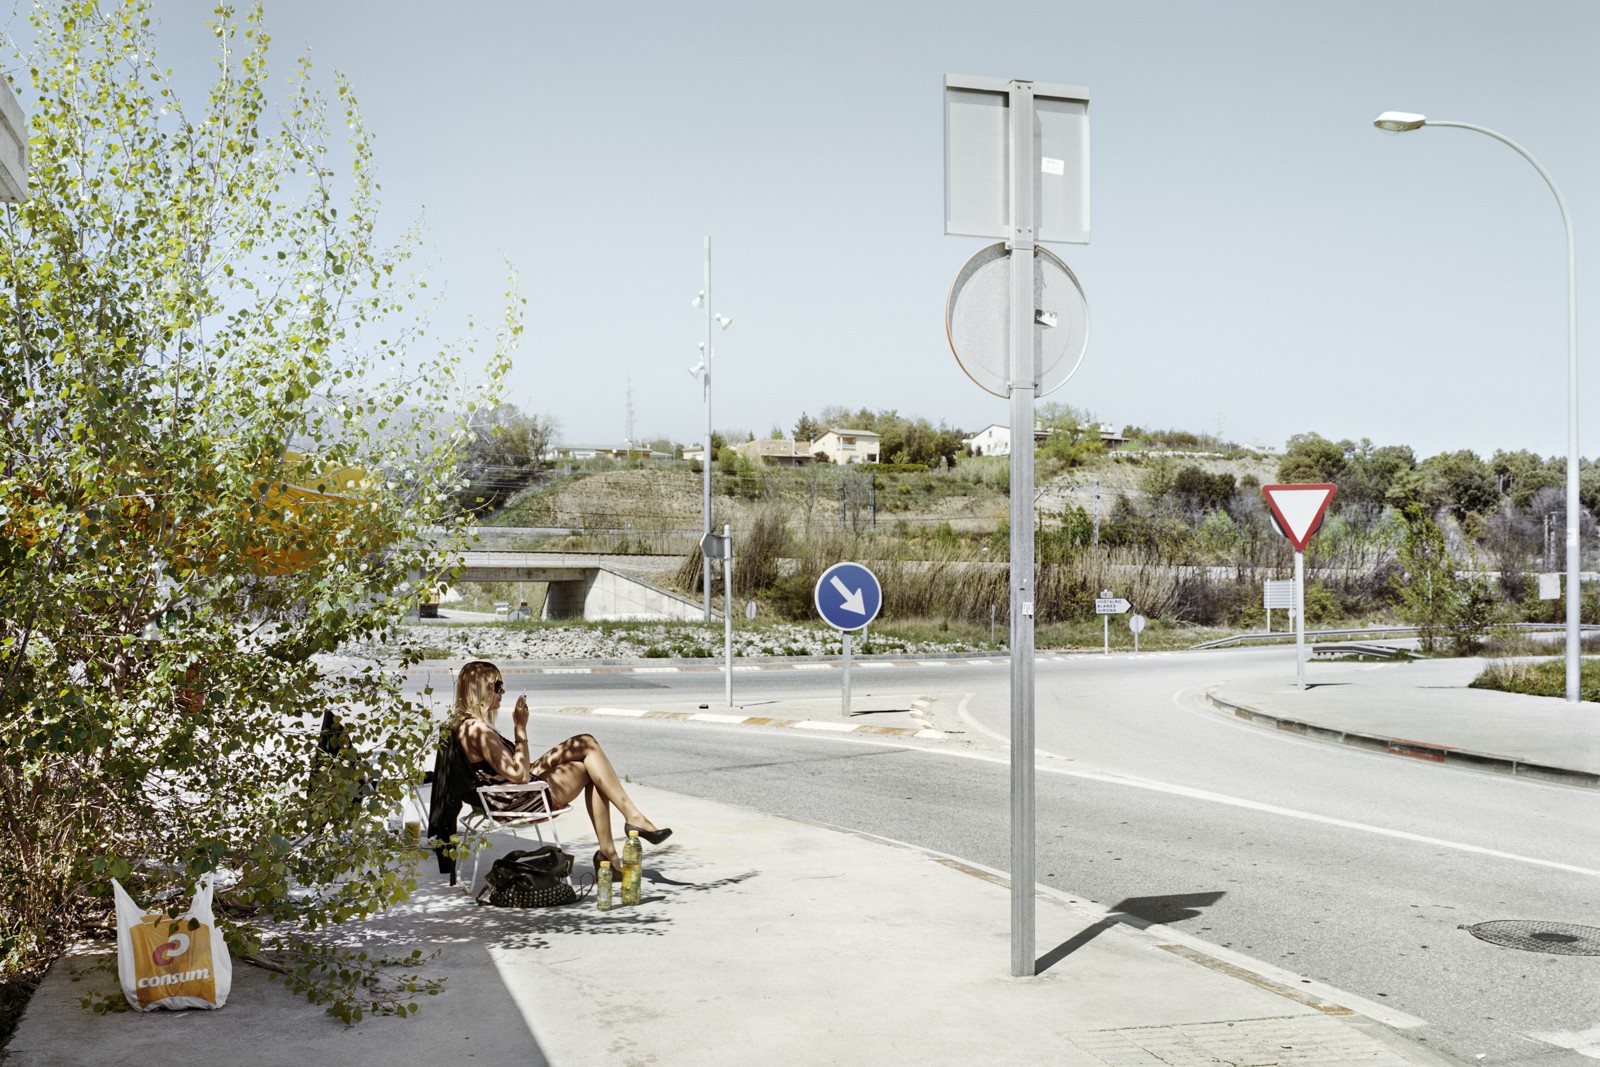 Сан-Селони, провинция Барселона, Трасса C-35. Фотопроект «Игра в ожидание». Фотограф Чема Сальванс